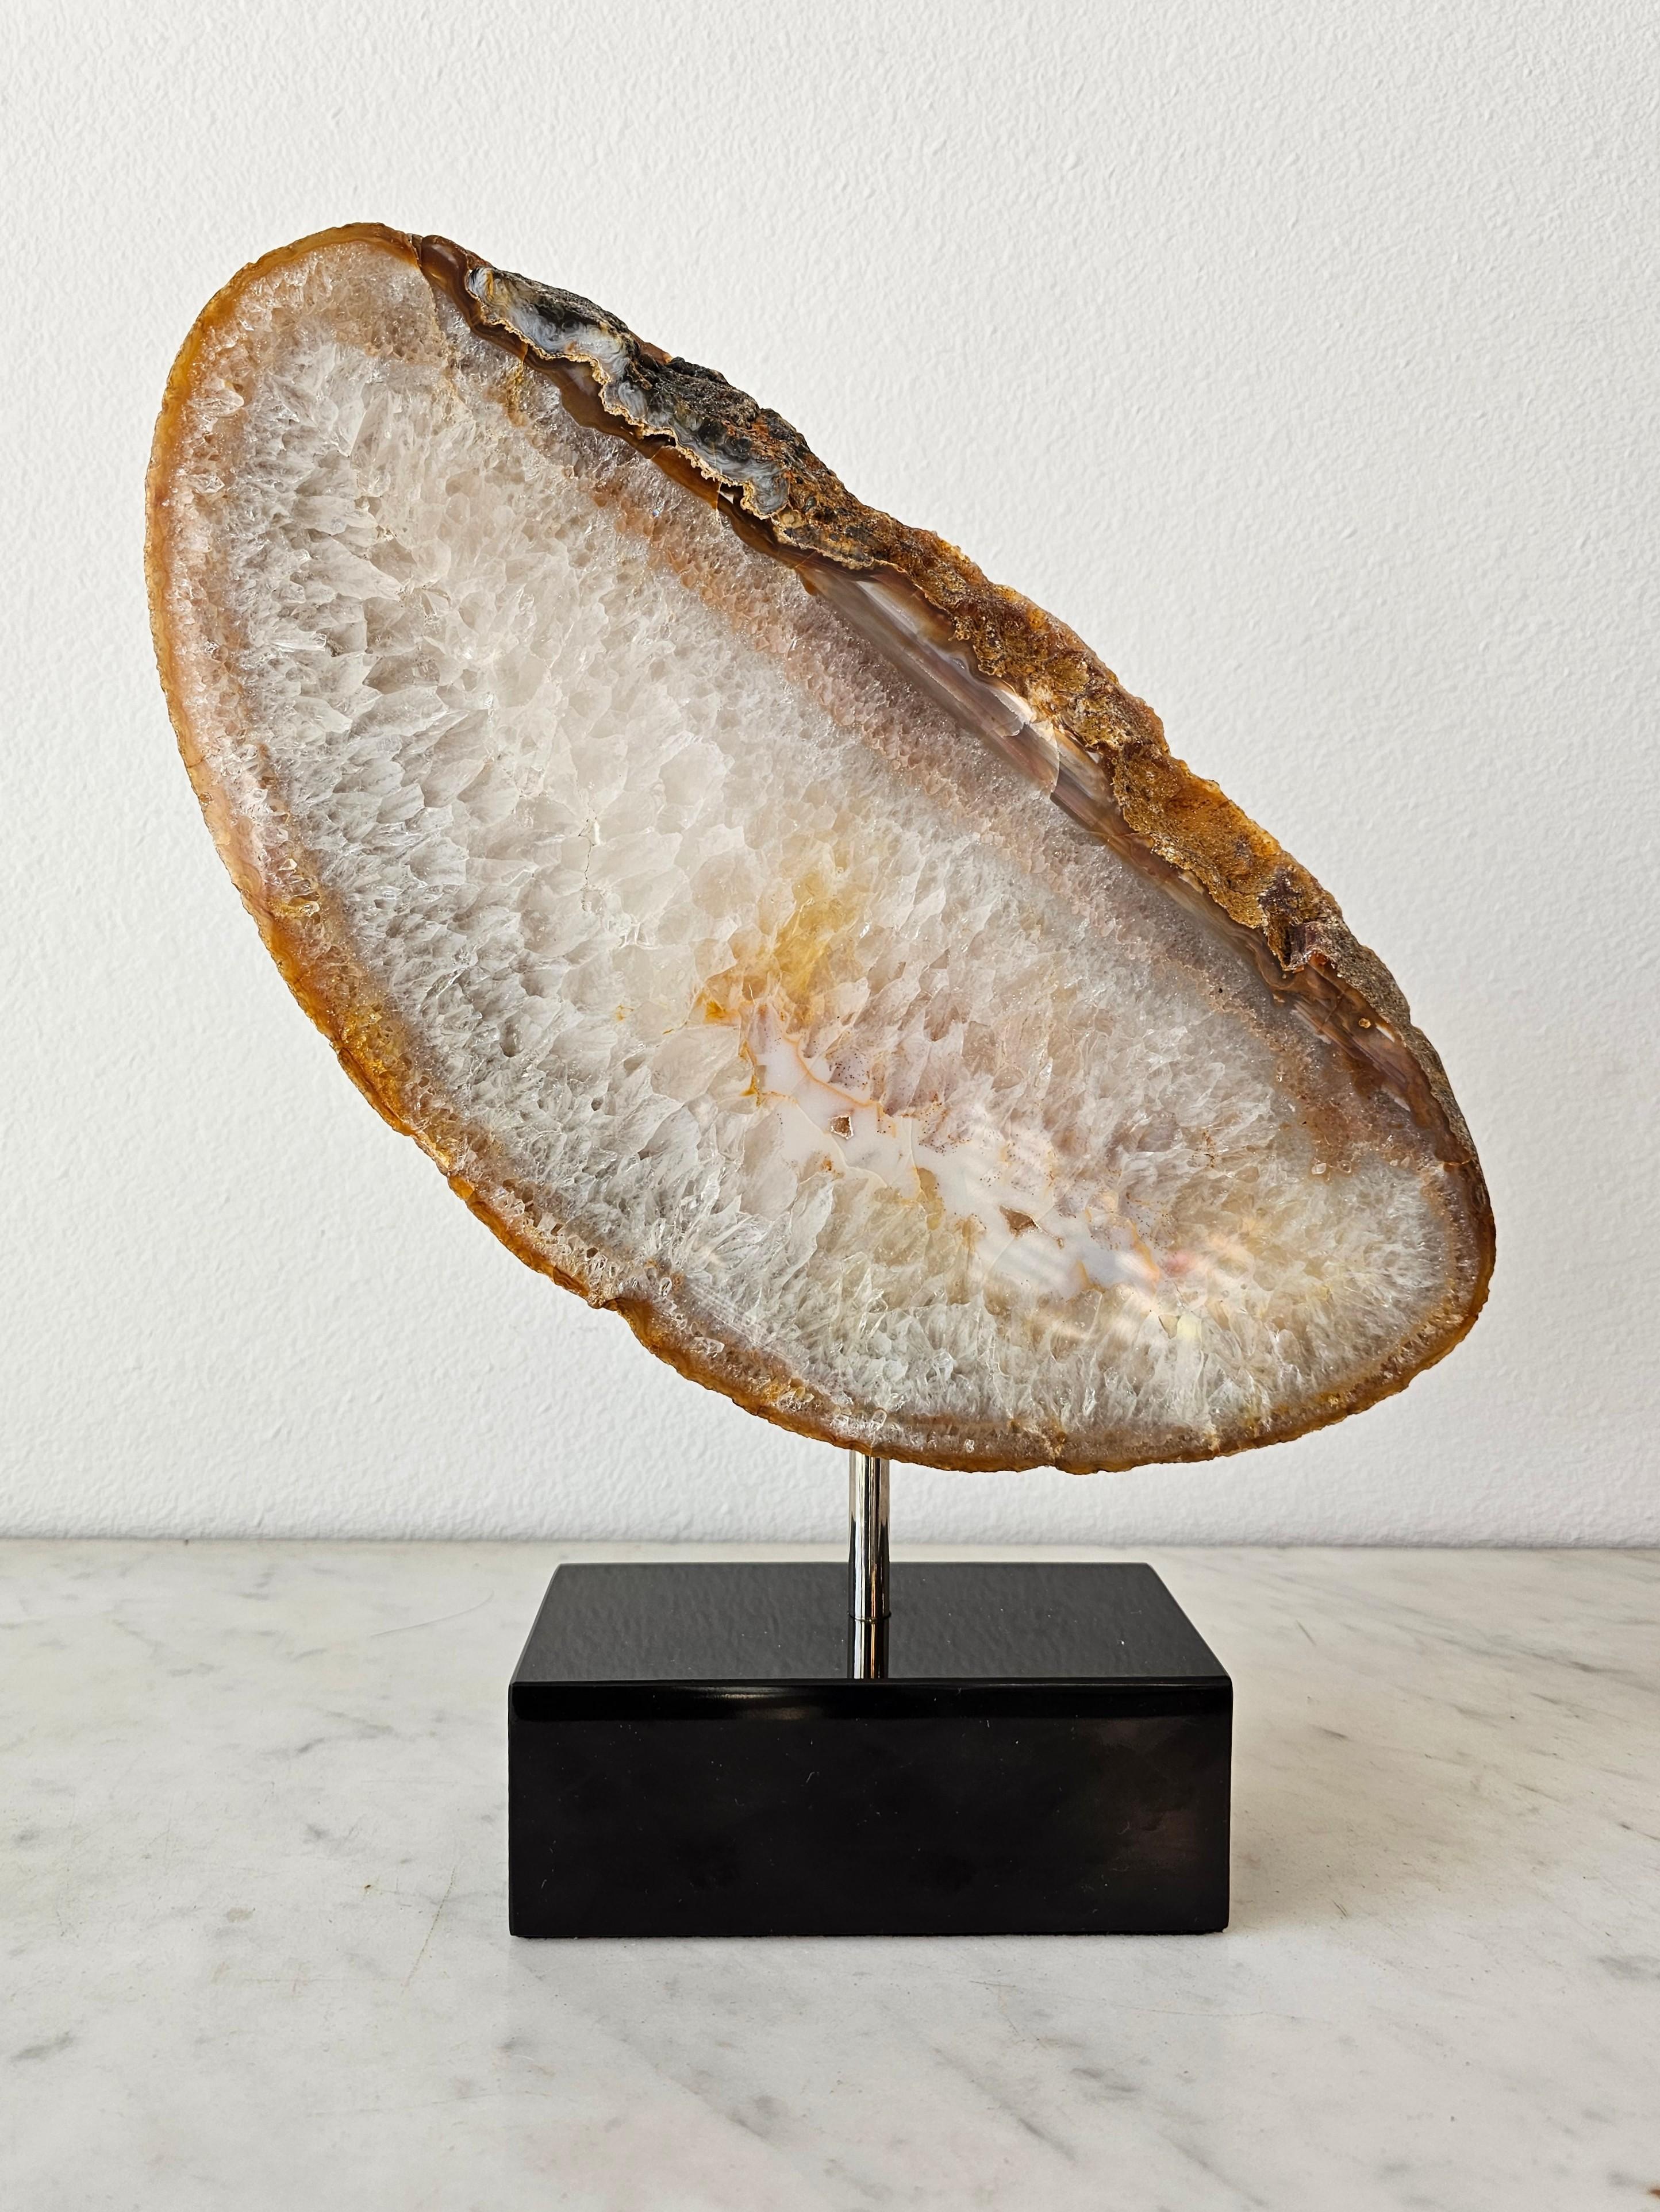 Polished Natural Sculptural Geological Agate Slice Specimen On Marble Stand For Sale